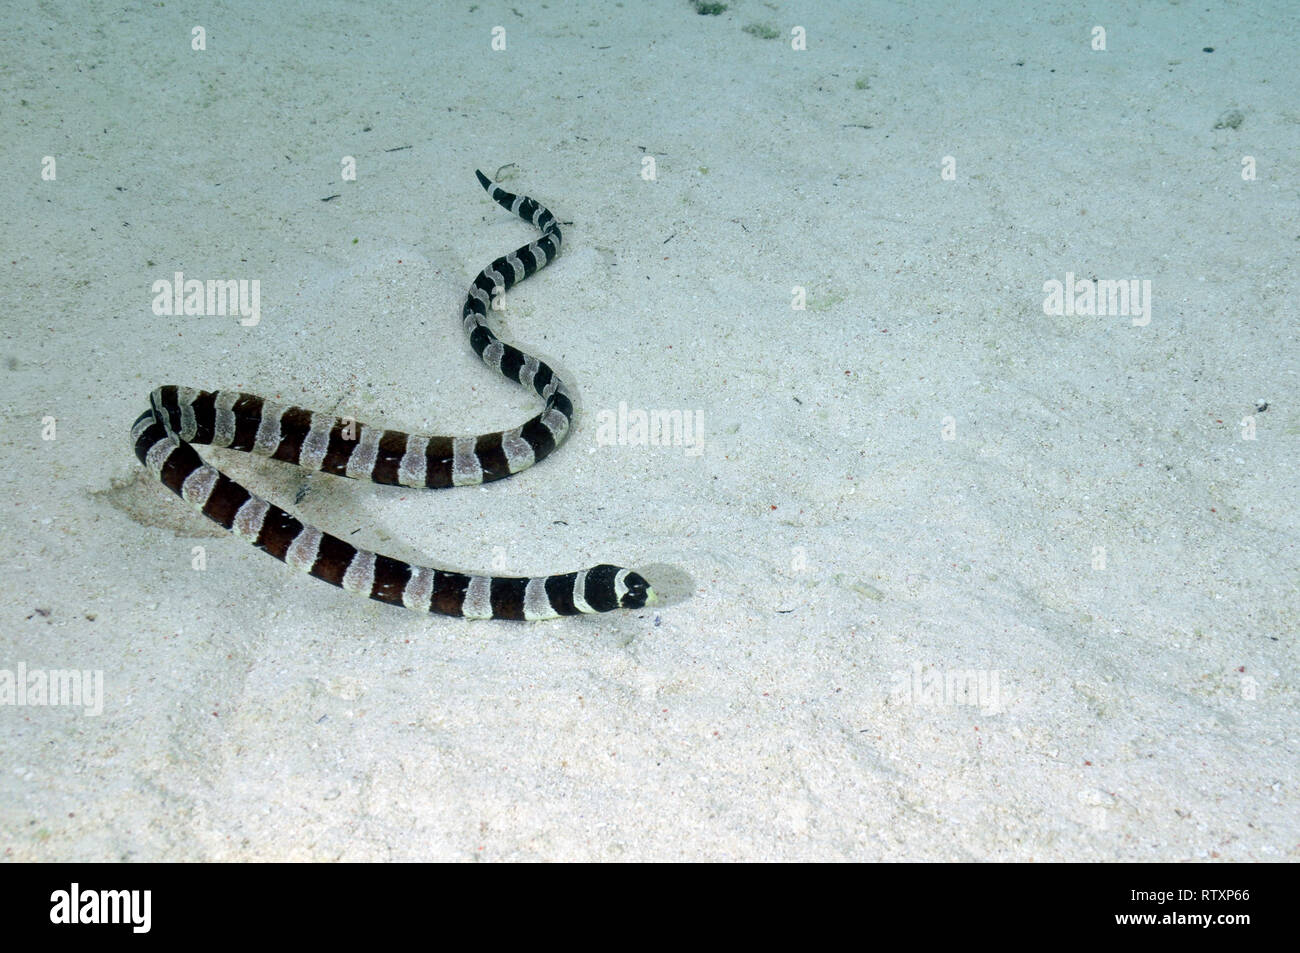 Striped sea snake, Laticauda colubrina, Piscine Naturelle, D'Oro Bay, Iles des Pins, New Caledonia, South Pacific Stock Photo